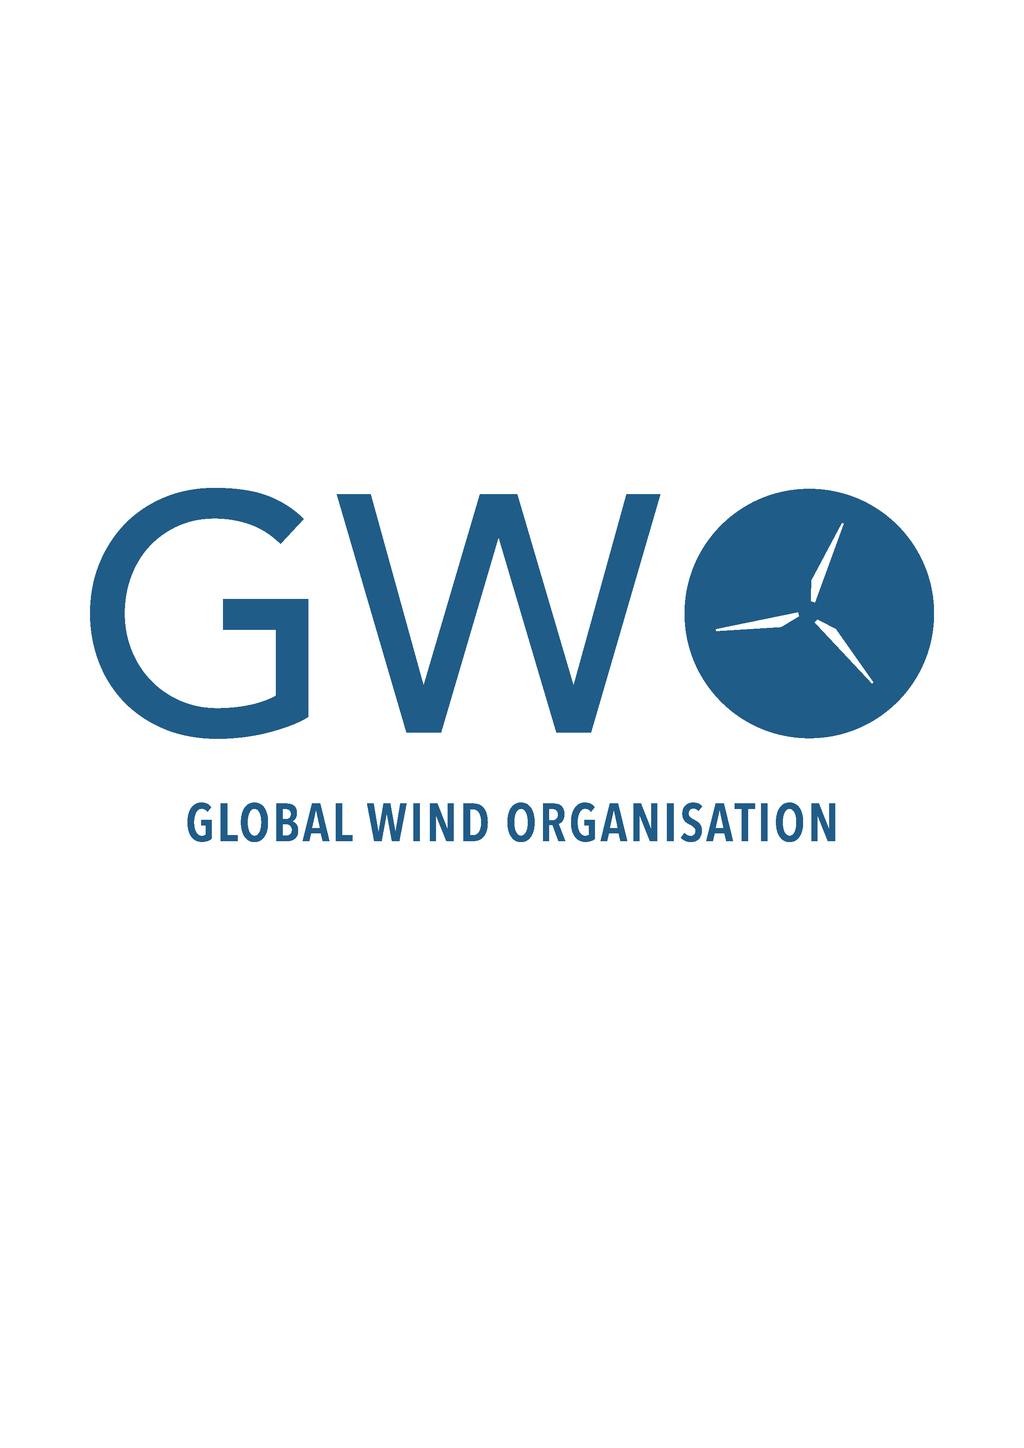 GWO BASIC SAFETY TRAINING GLOBAL WIND ORGANIZATION (GWO) es una asociación de propietarios y fabricantes de aerogeneradores, diseñada para proporcionar una formación básica en seguridad reconocida en